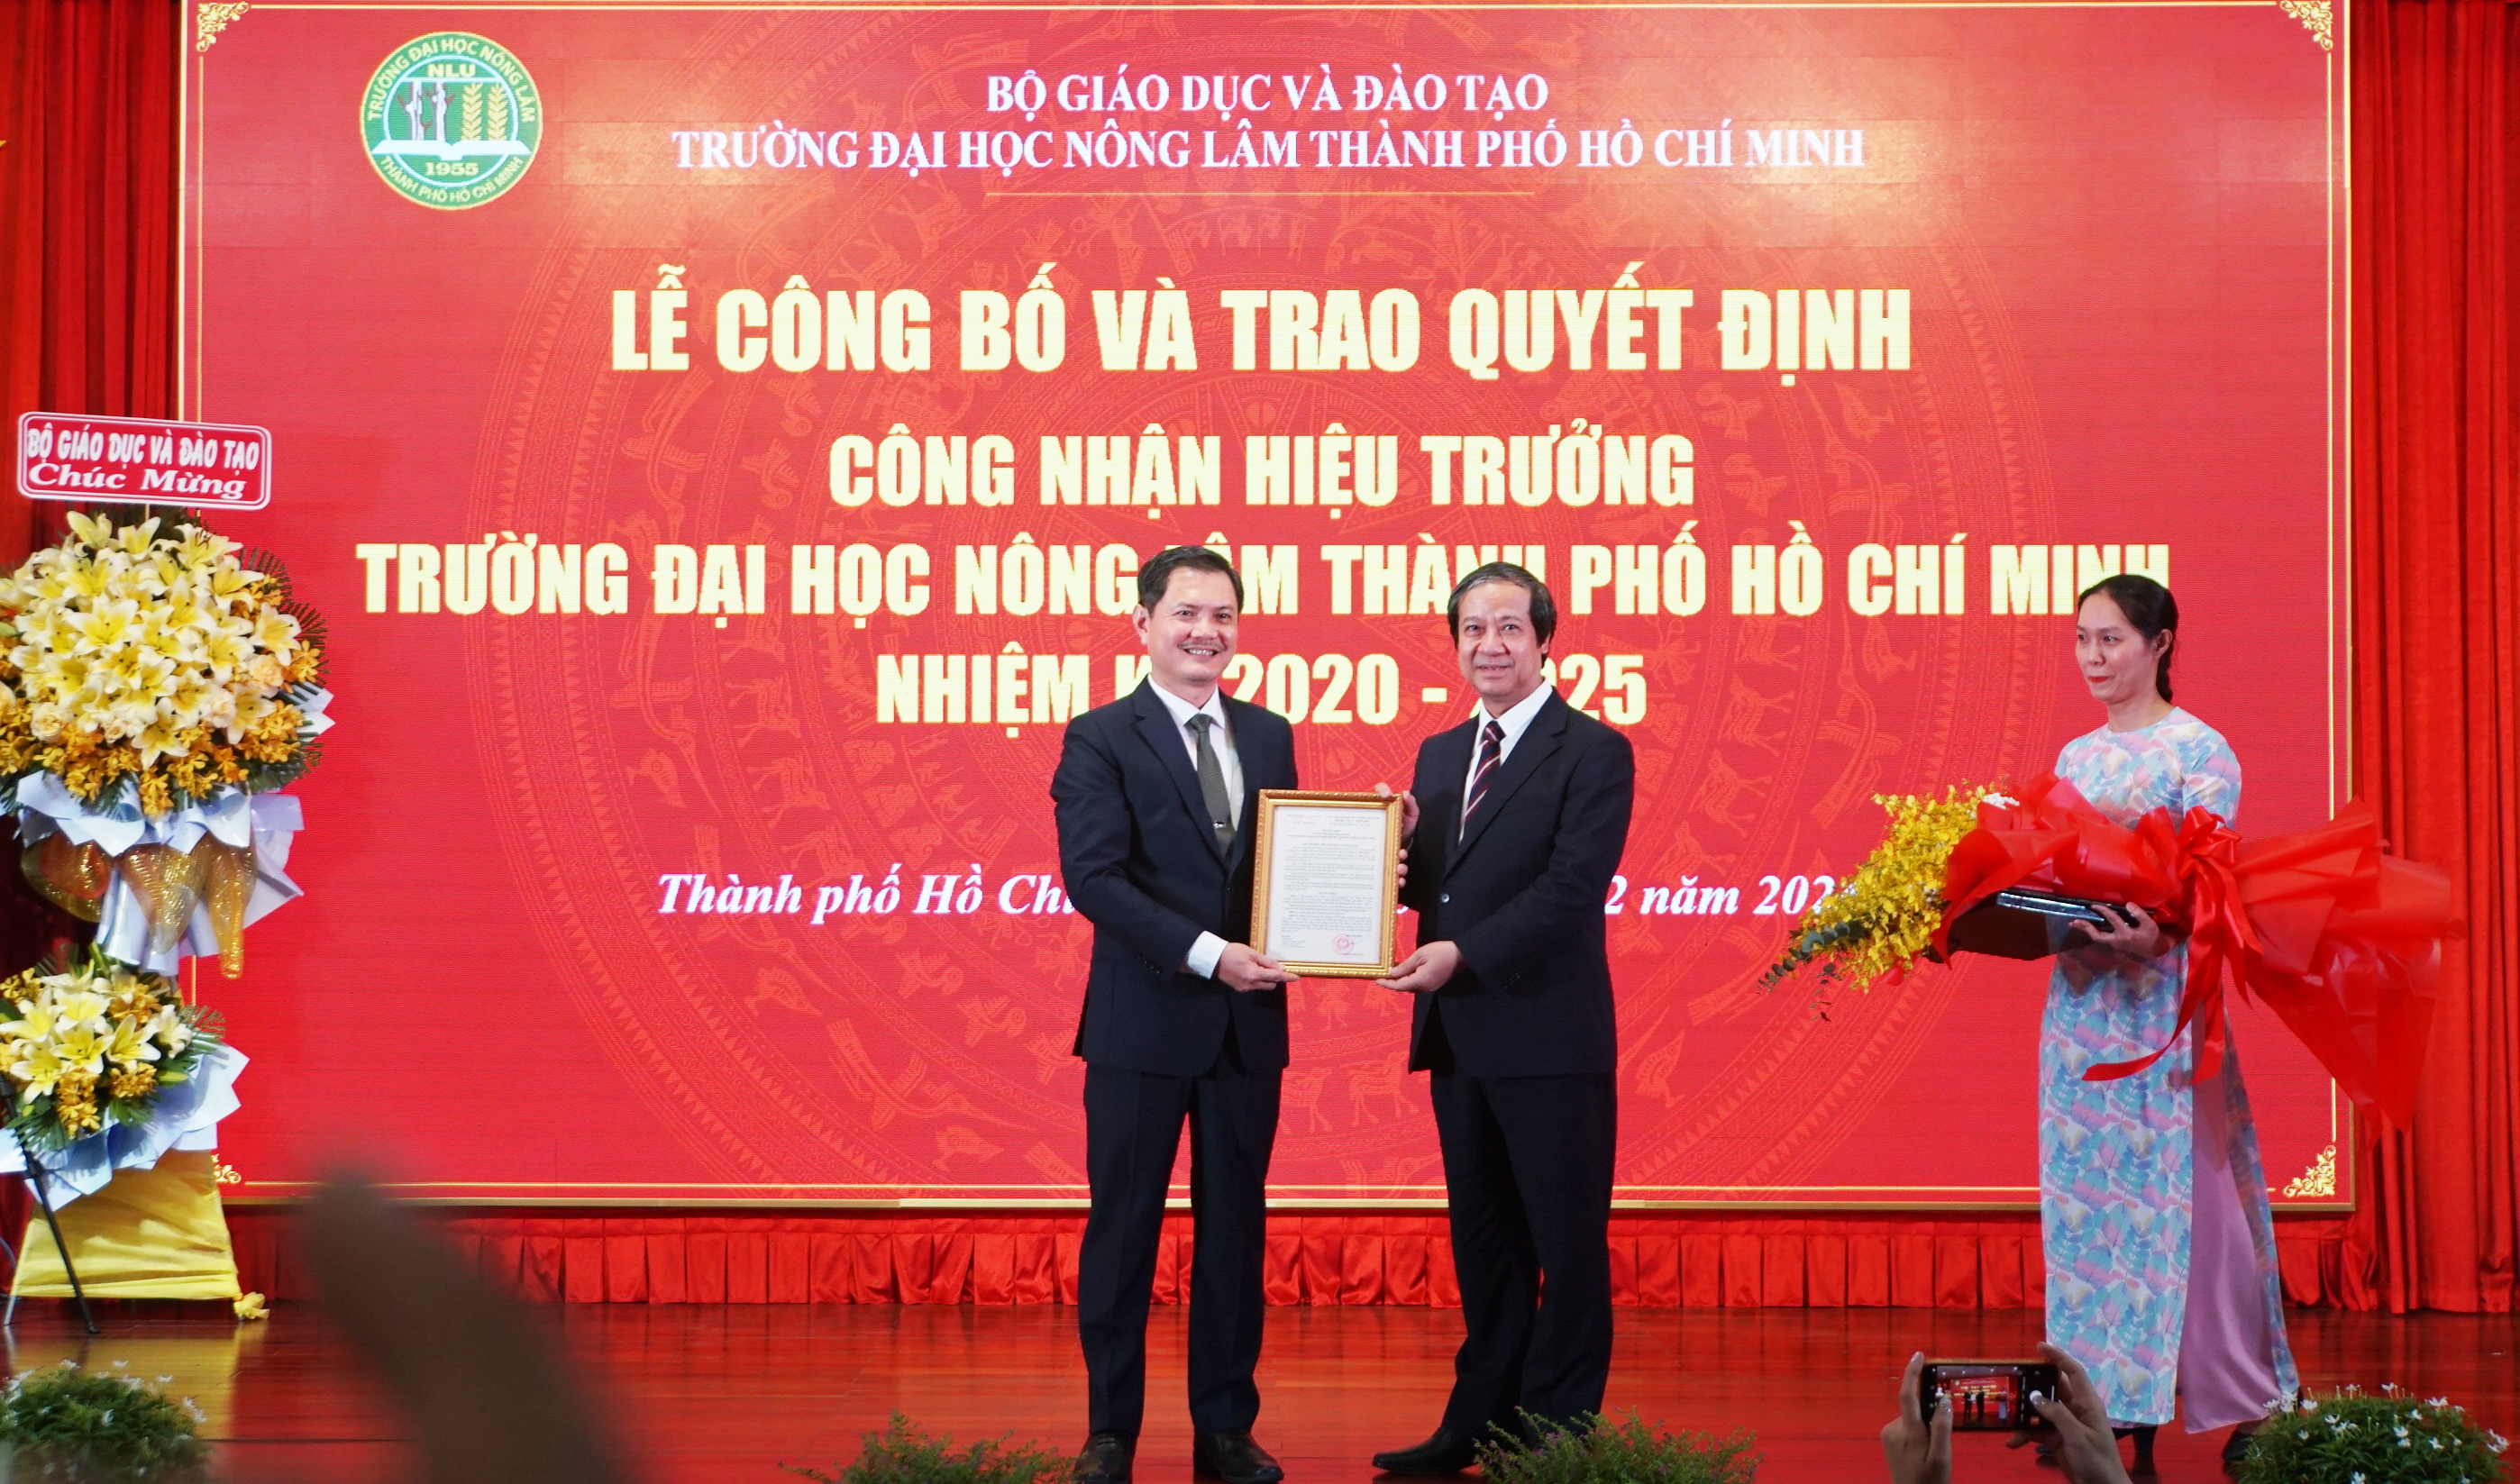 Bộ trưởng Nguyễn Kim Sơn (phải) trao quyết định công nhận Hiệu trưởng Trường Đại học Nông Lâm TPHCM đối với PGS.TS Nguyễn Tất Toàn. Ảnh: Mạnh Tùng